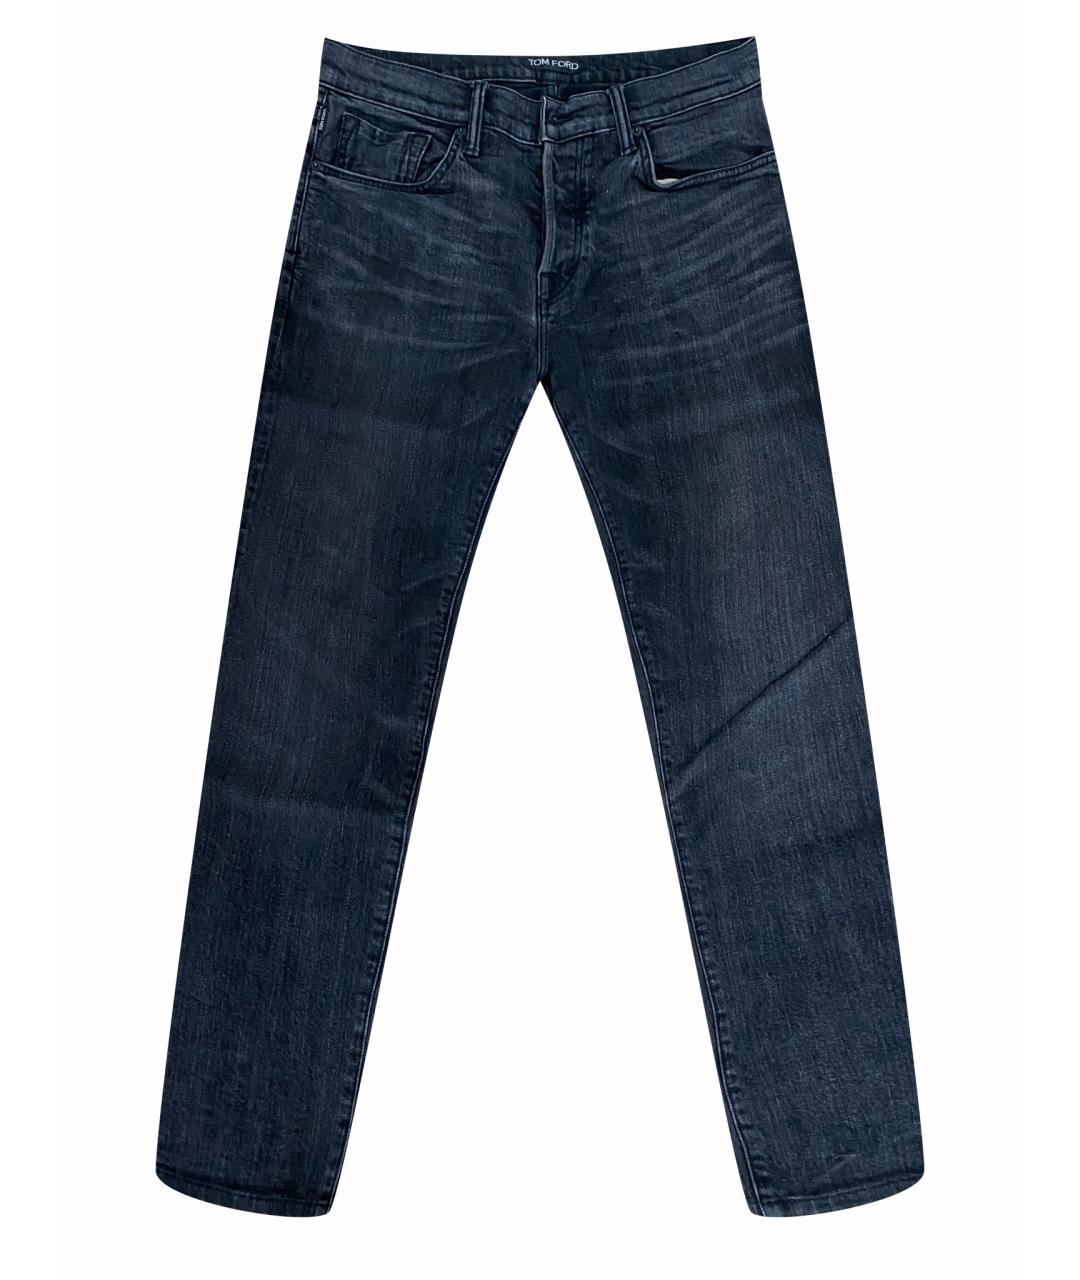 TOM FORD Антрацитовые хлопковые прямые джинсы, фото 1